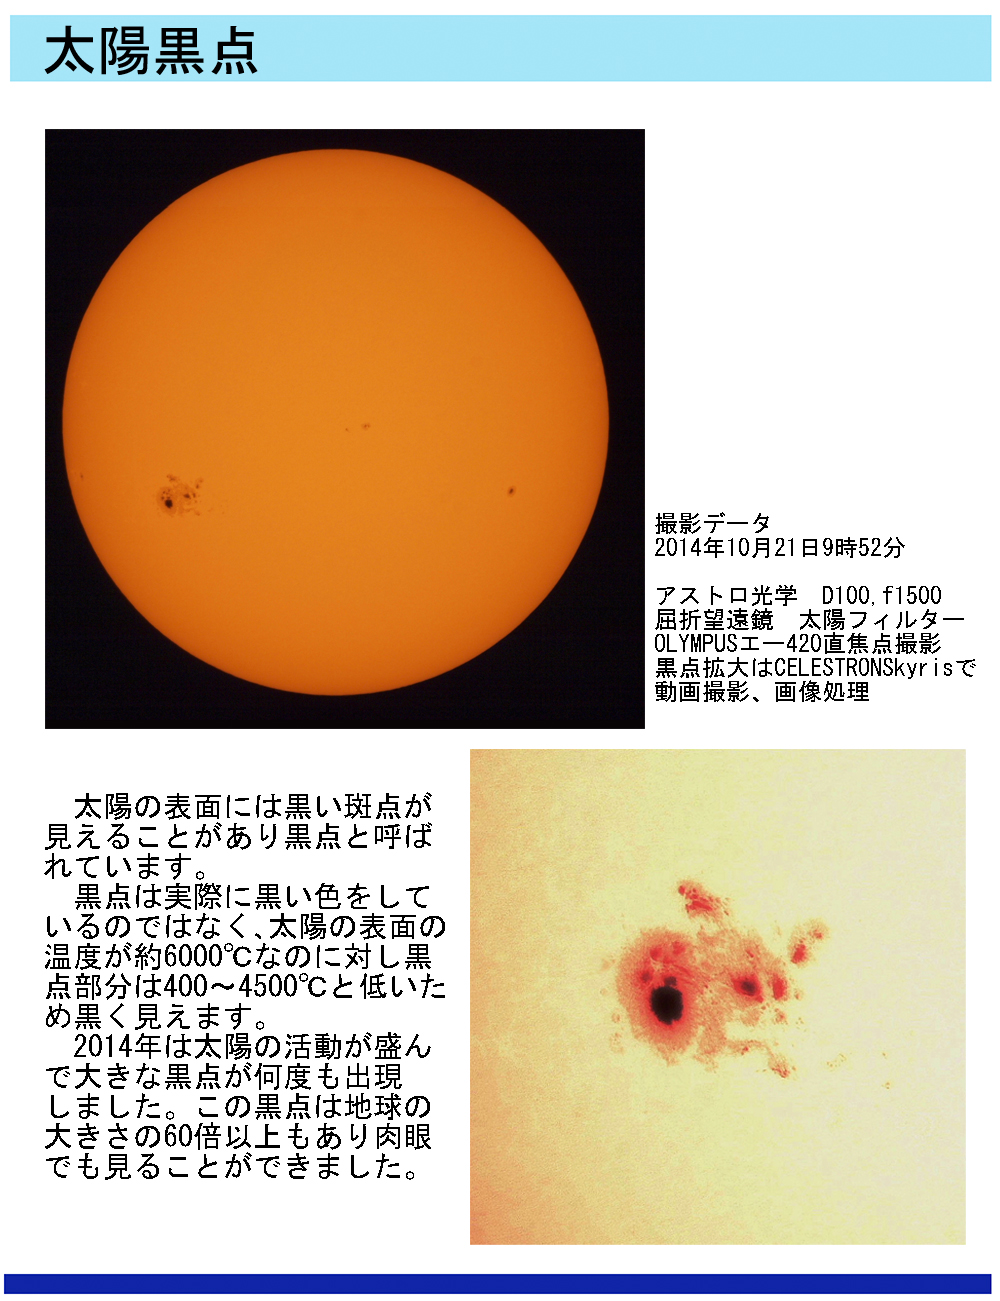 太陽面の黒点の天体写真